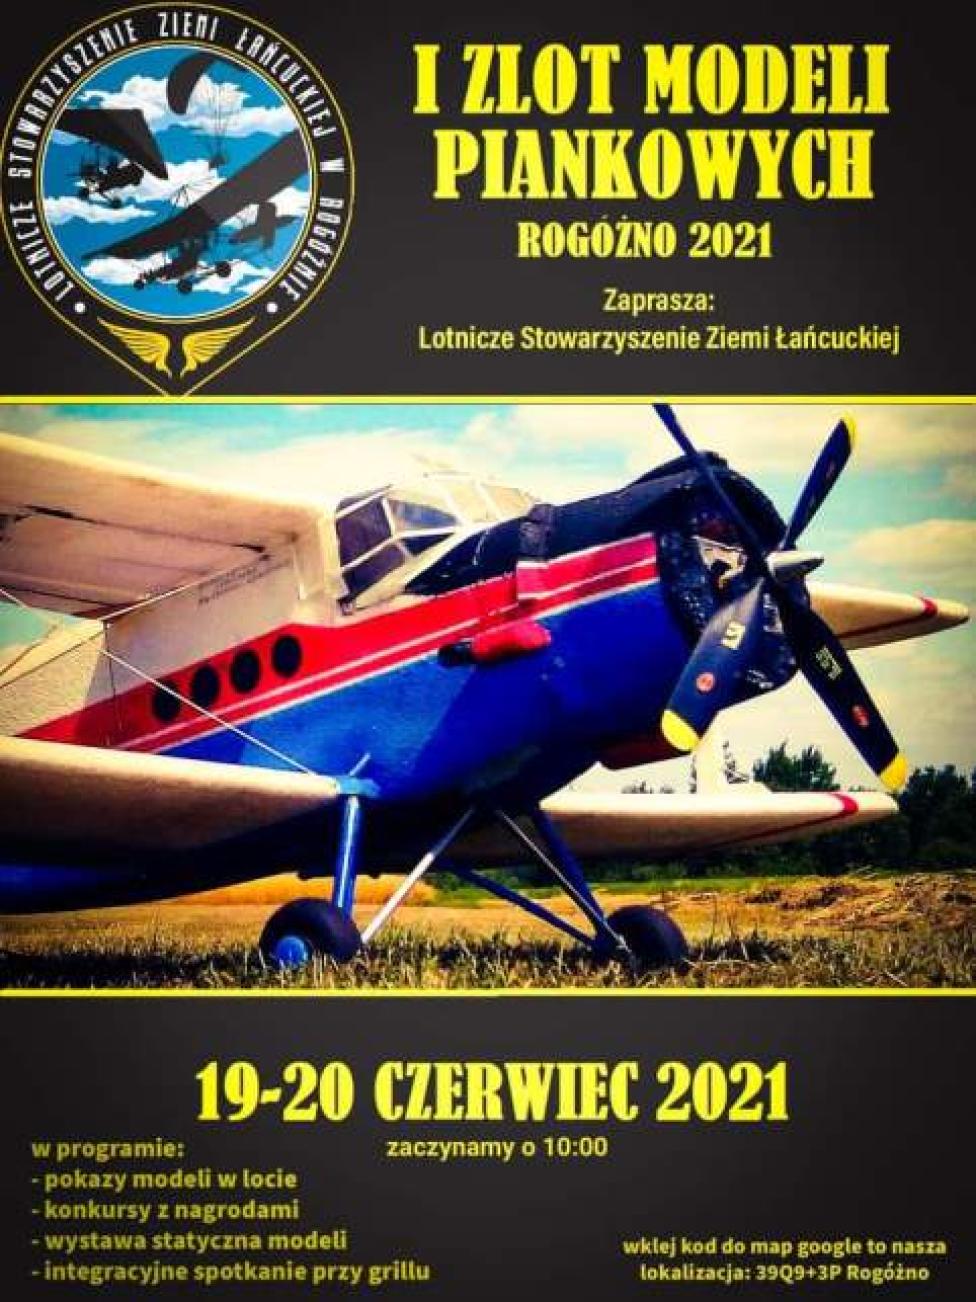 I Zlot Modeli Piankowych Rogóżno 2021 (fot. Lotnicze Stowarzyszenie Ziemi Łańcuckiej w Rogóżnie)